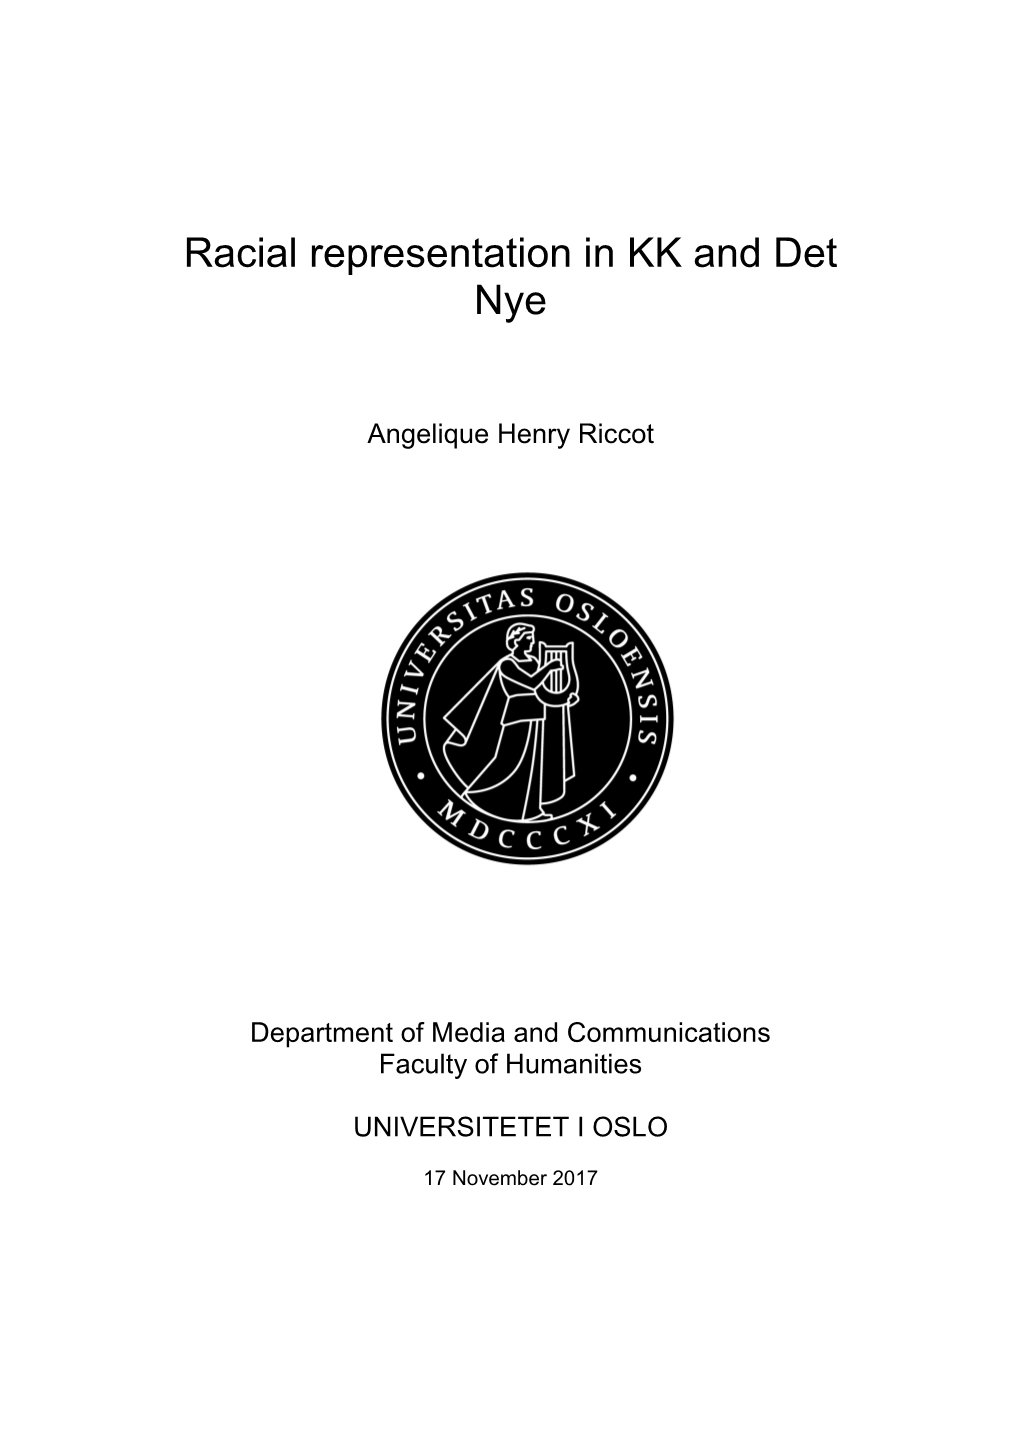 Racial Representation in KK and Det Nye